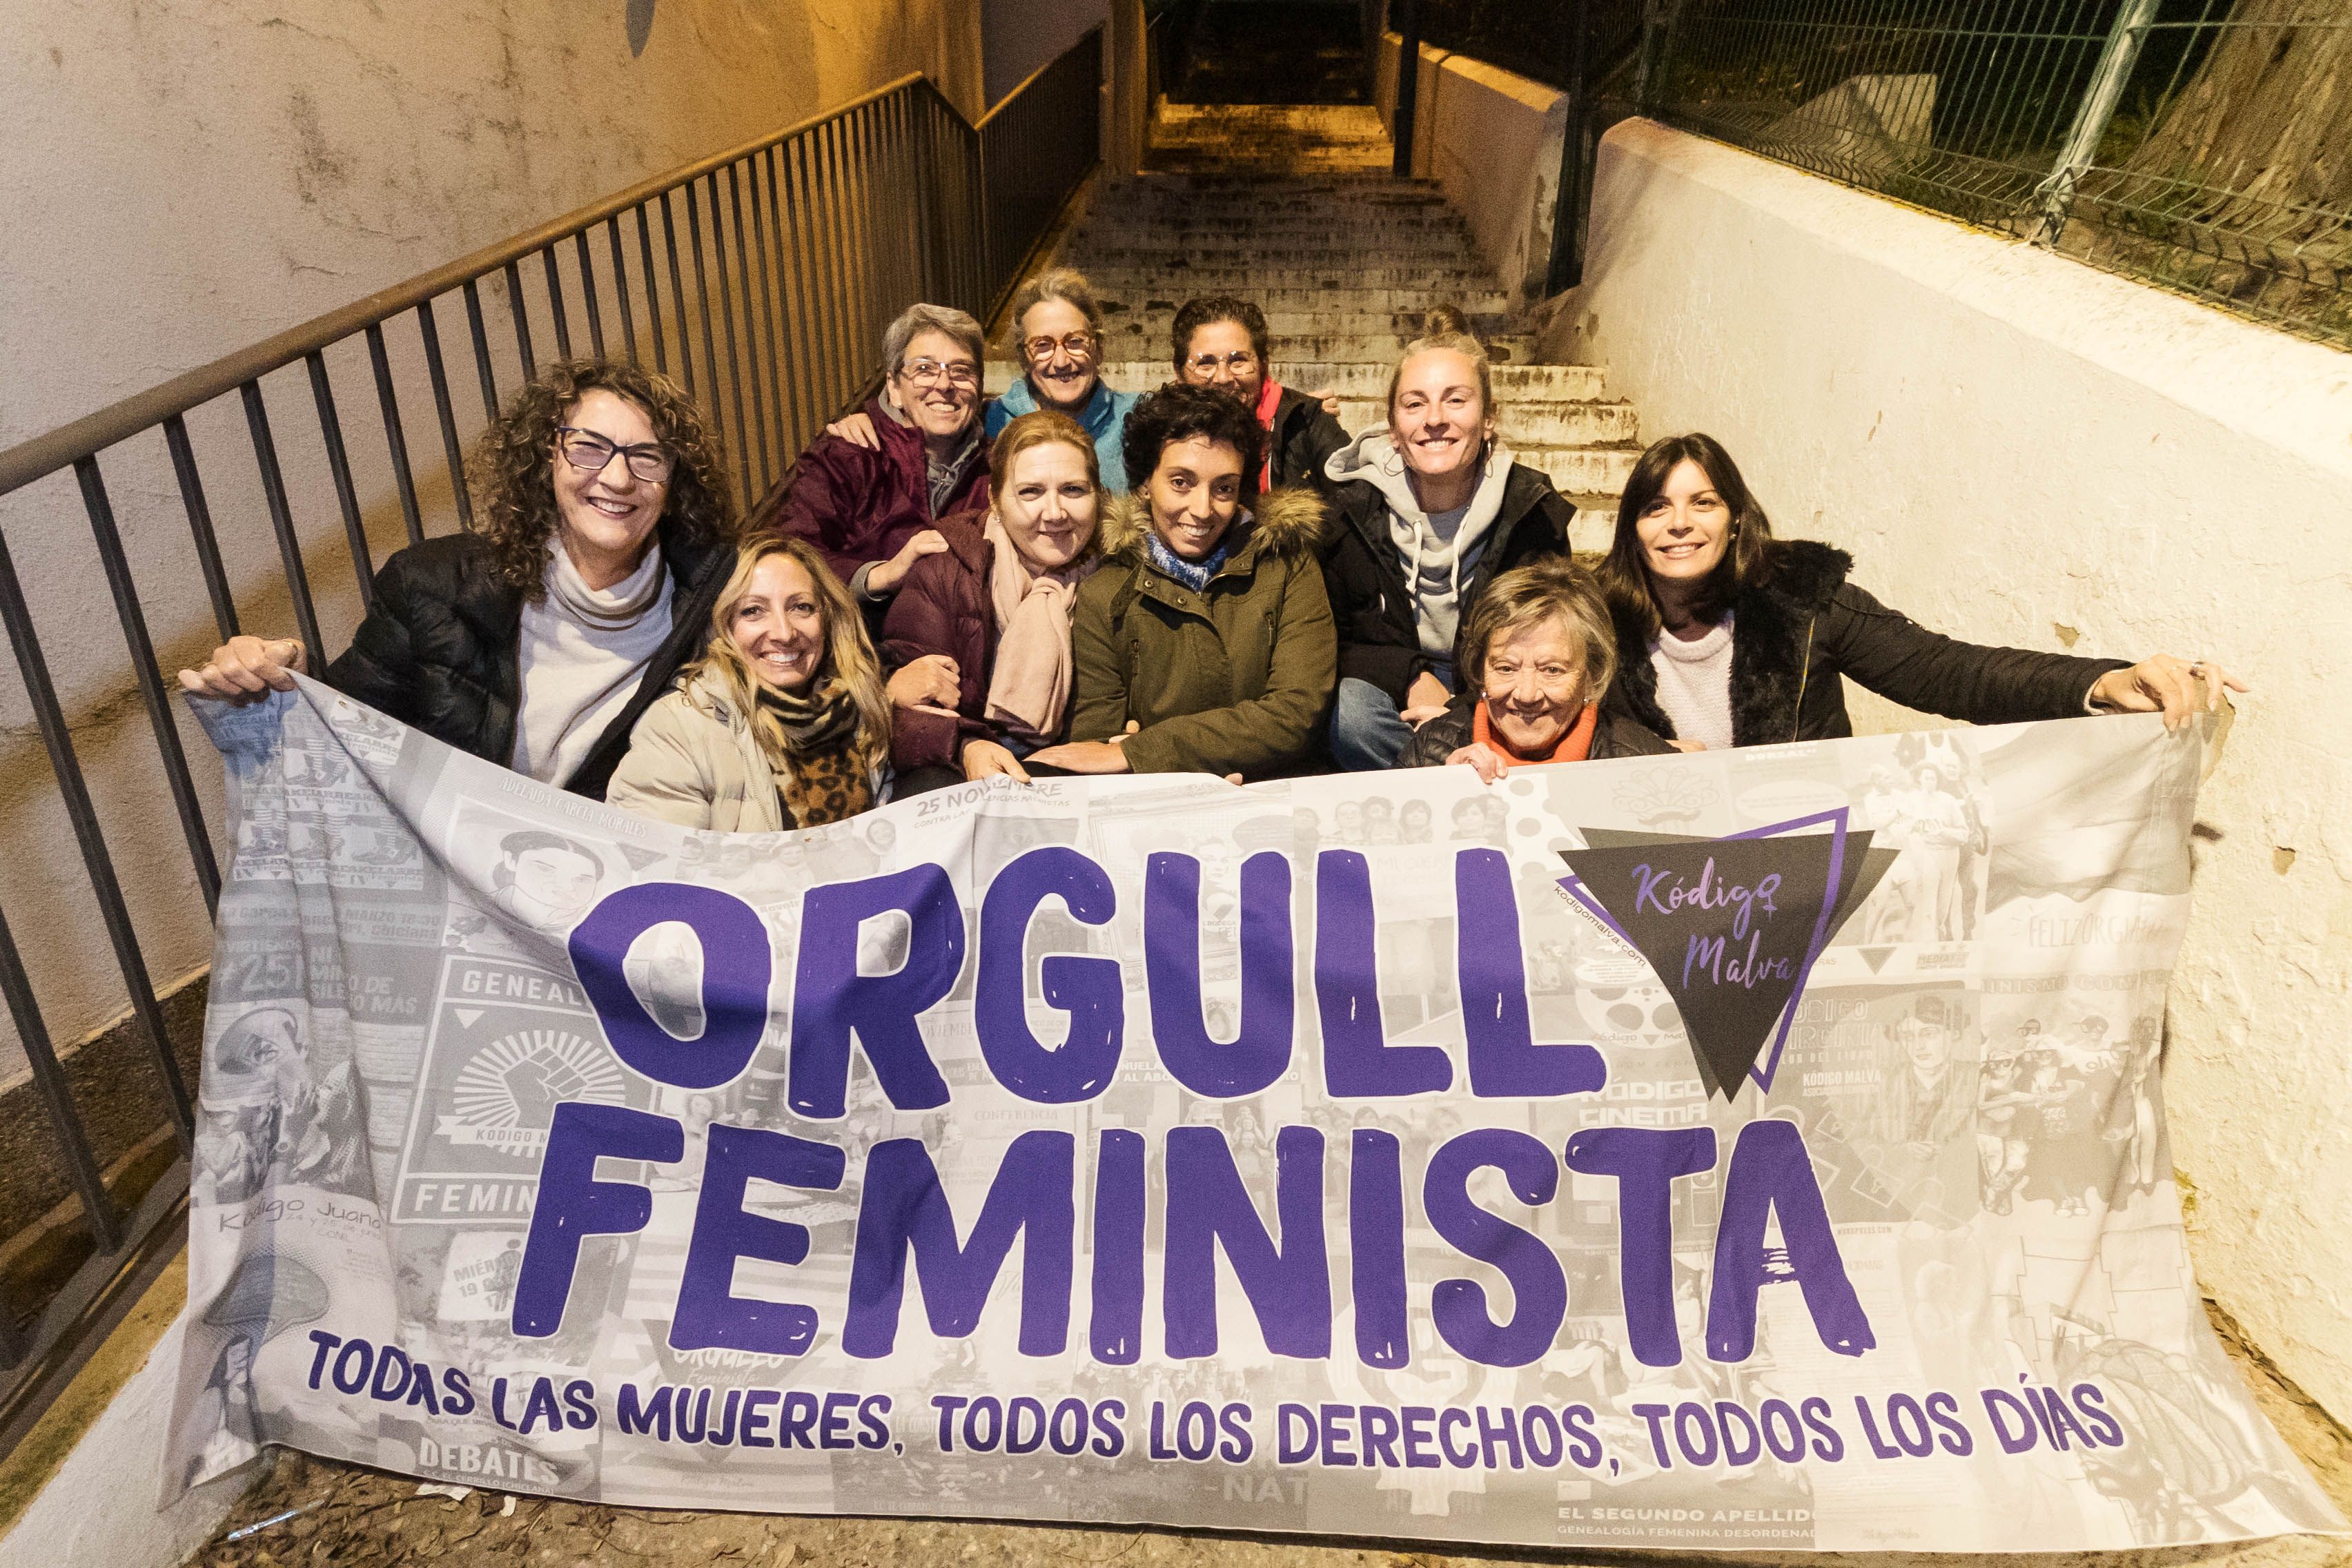 Las mujeres que componen la asociación feminista Kódigo Malva, creadoras del fanzine.